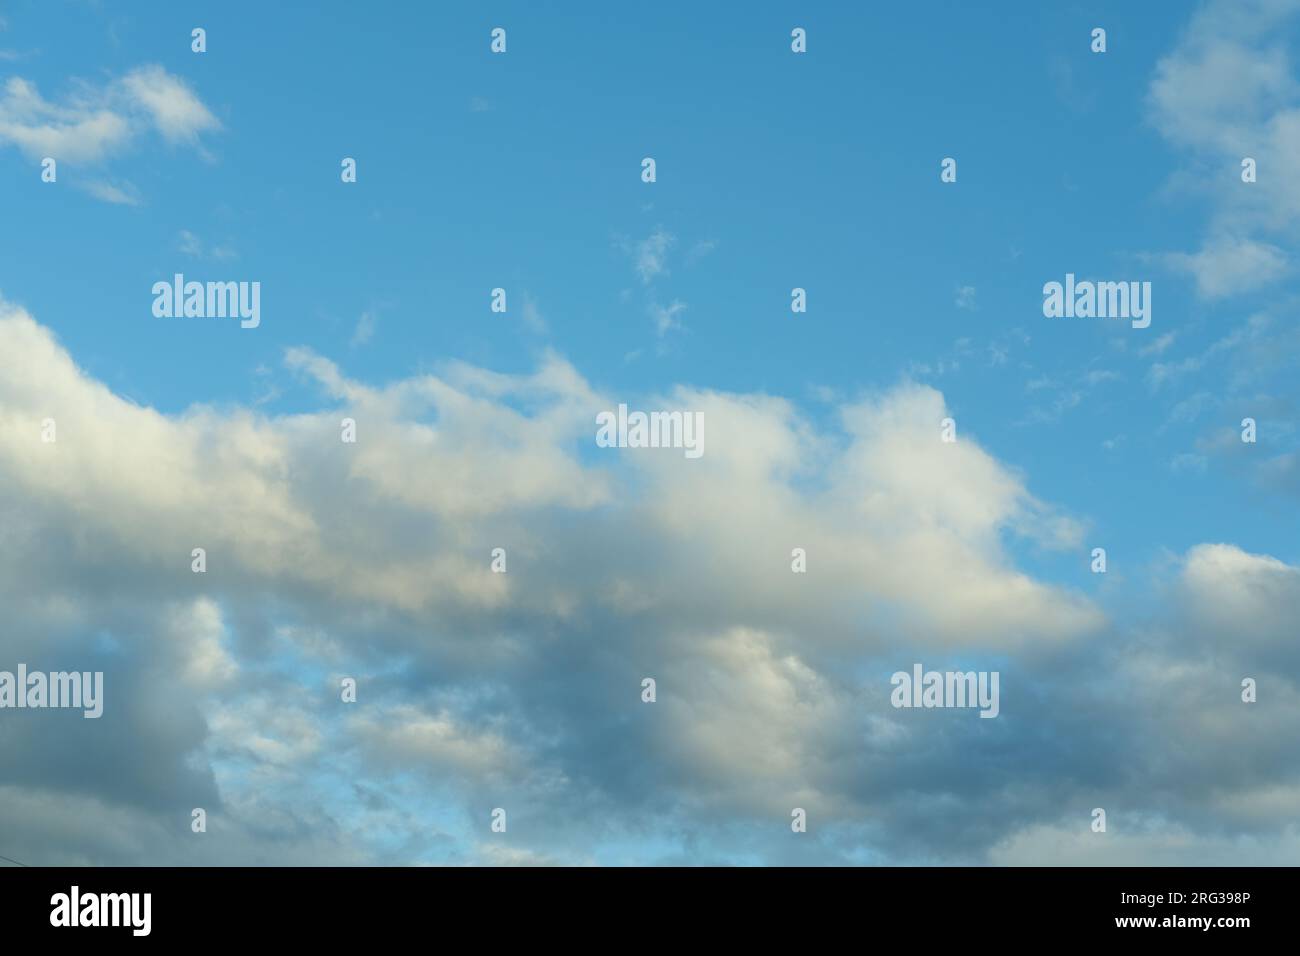 Blauer Himmel Hintergrund mit weißen flauschigen Cumulus Wolken. Panorama von weißen, flauschigen Wolken am blauen Himmel. Wunderschöner, riesiger blauer Himmel mit erstaunlichen verstreuten Stockfoto